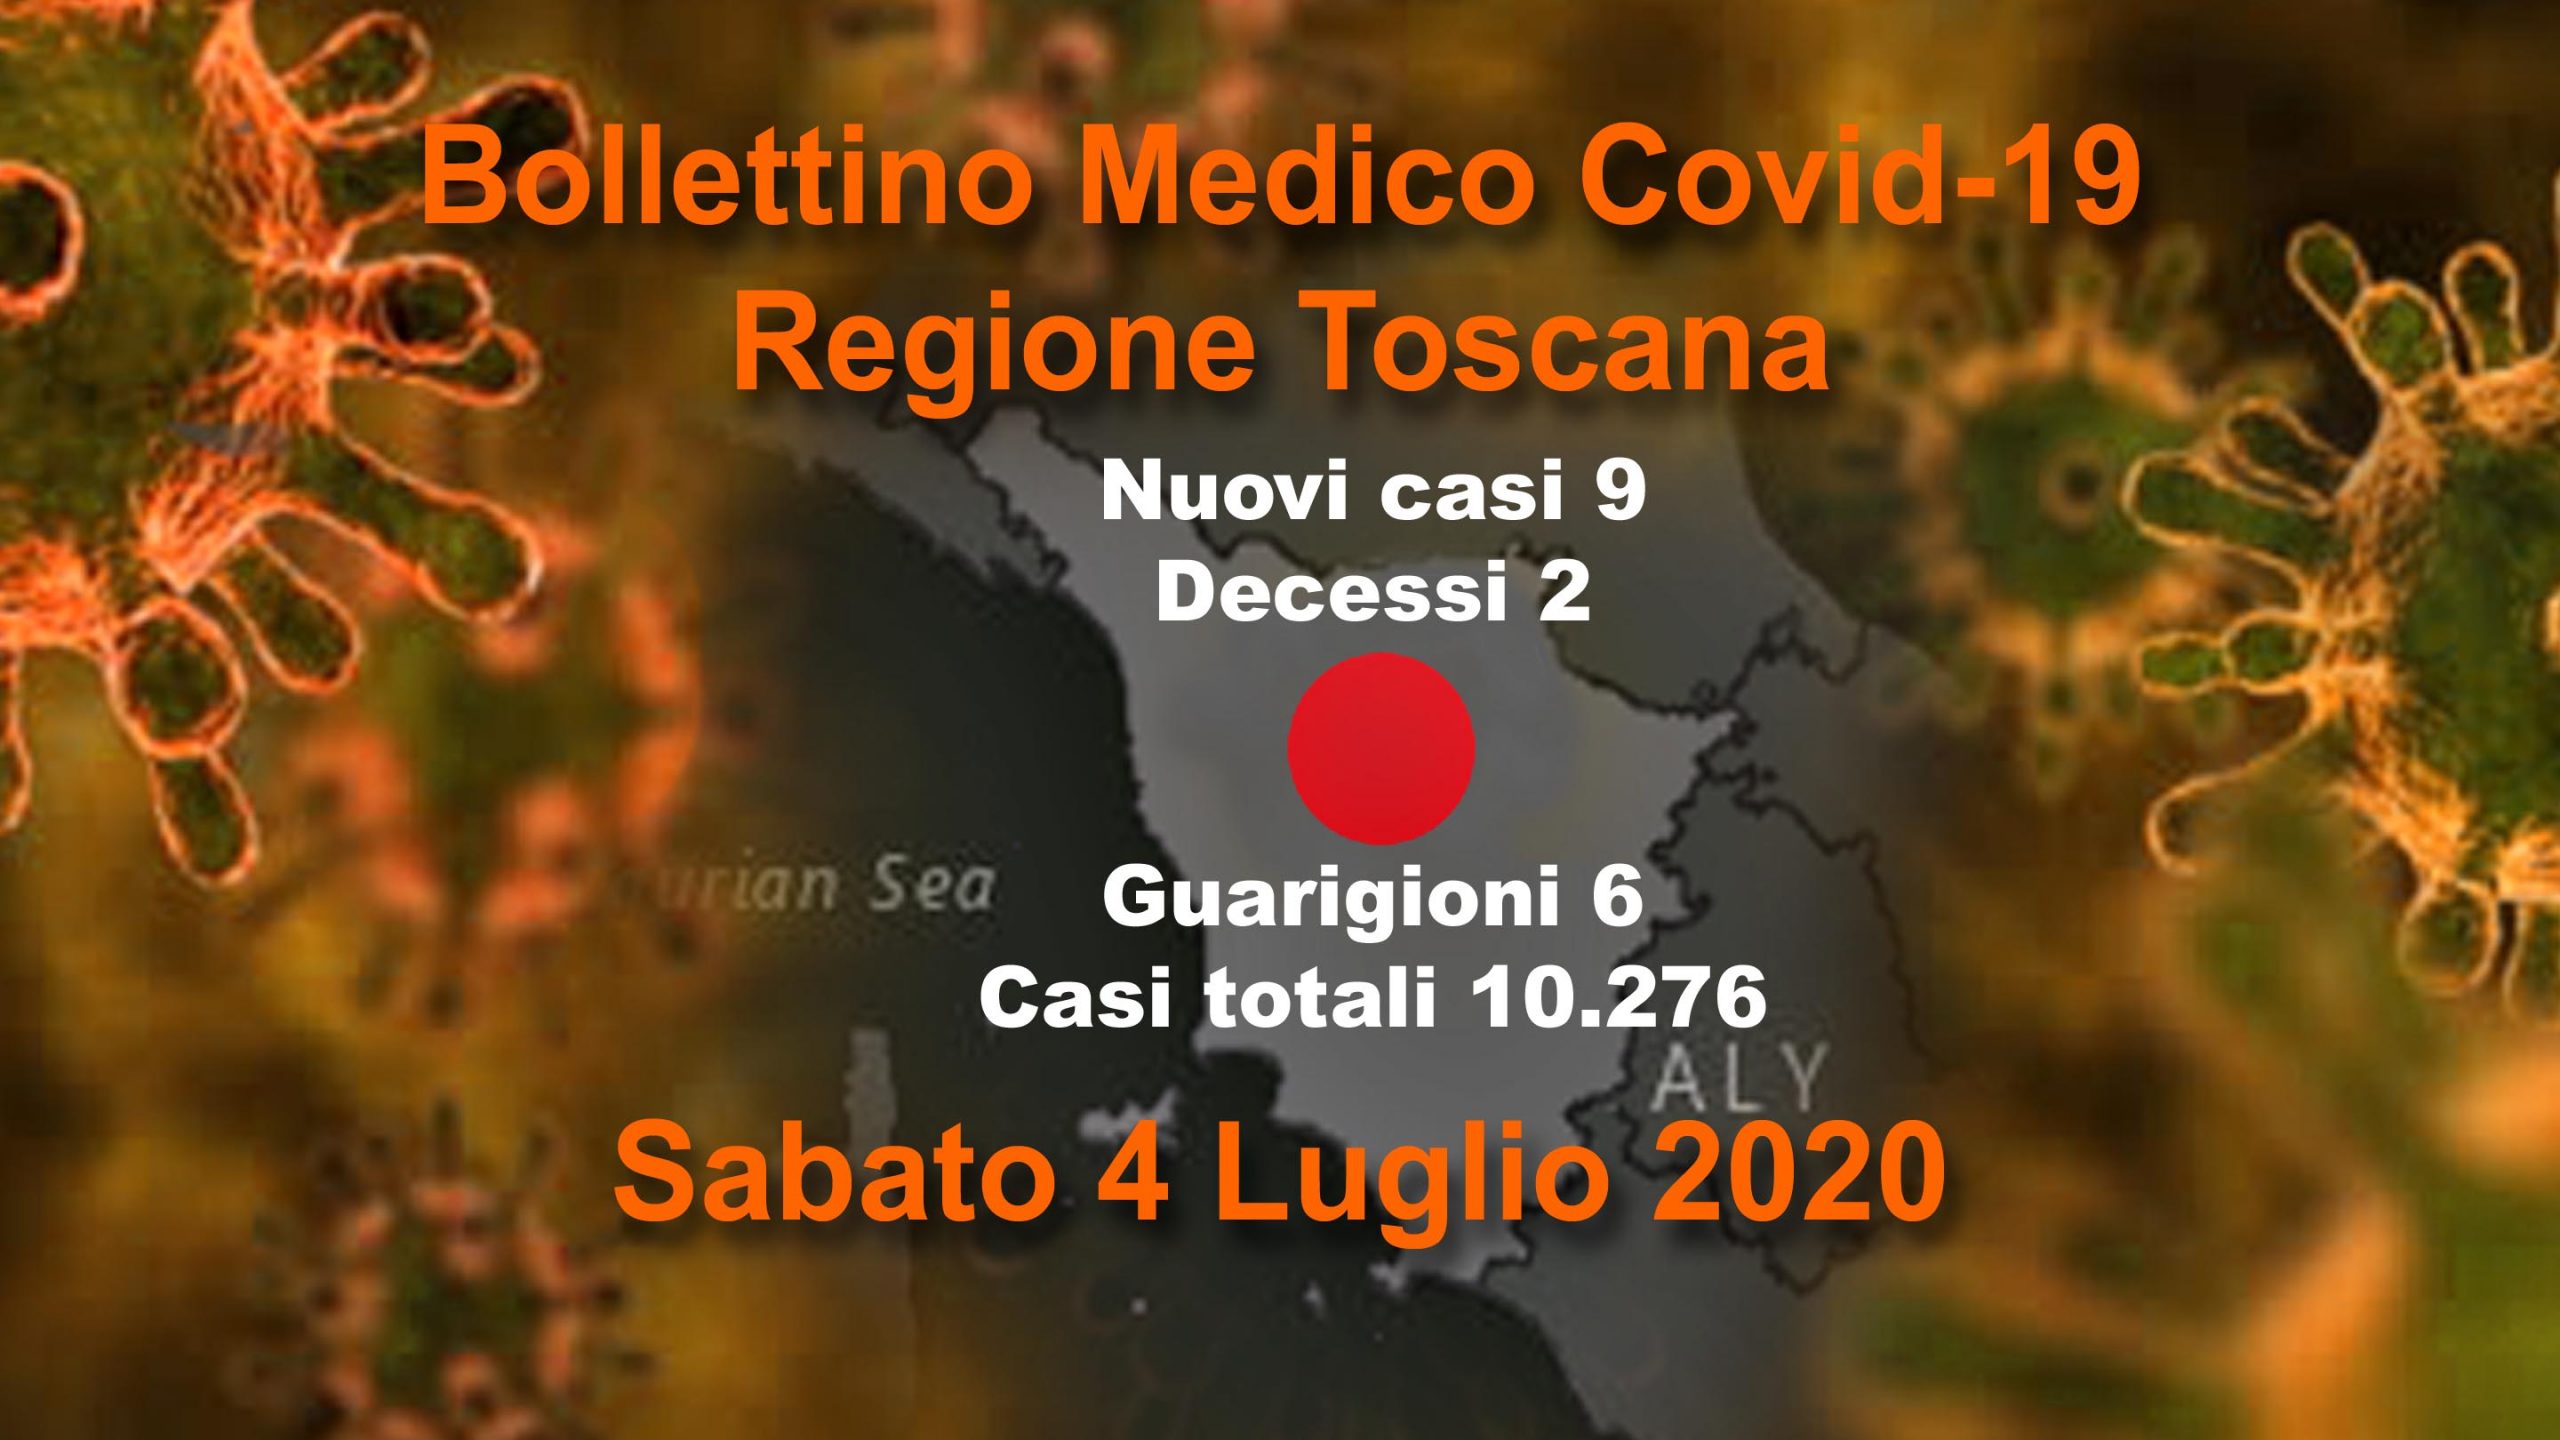 Coronavirus in Toscana: 9 nuovi casi, 2 decessi, 6 guarigioni